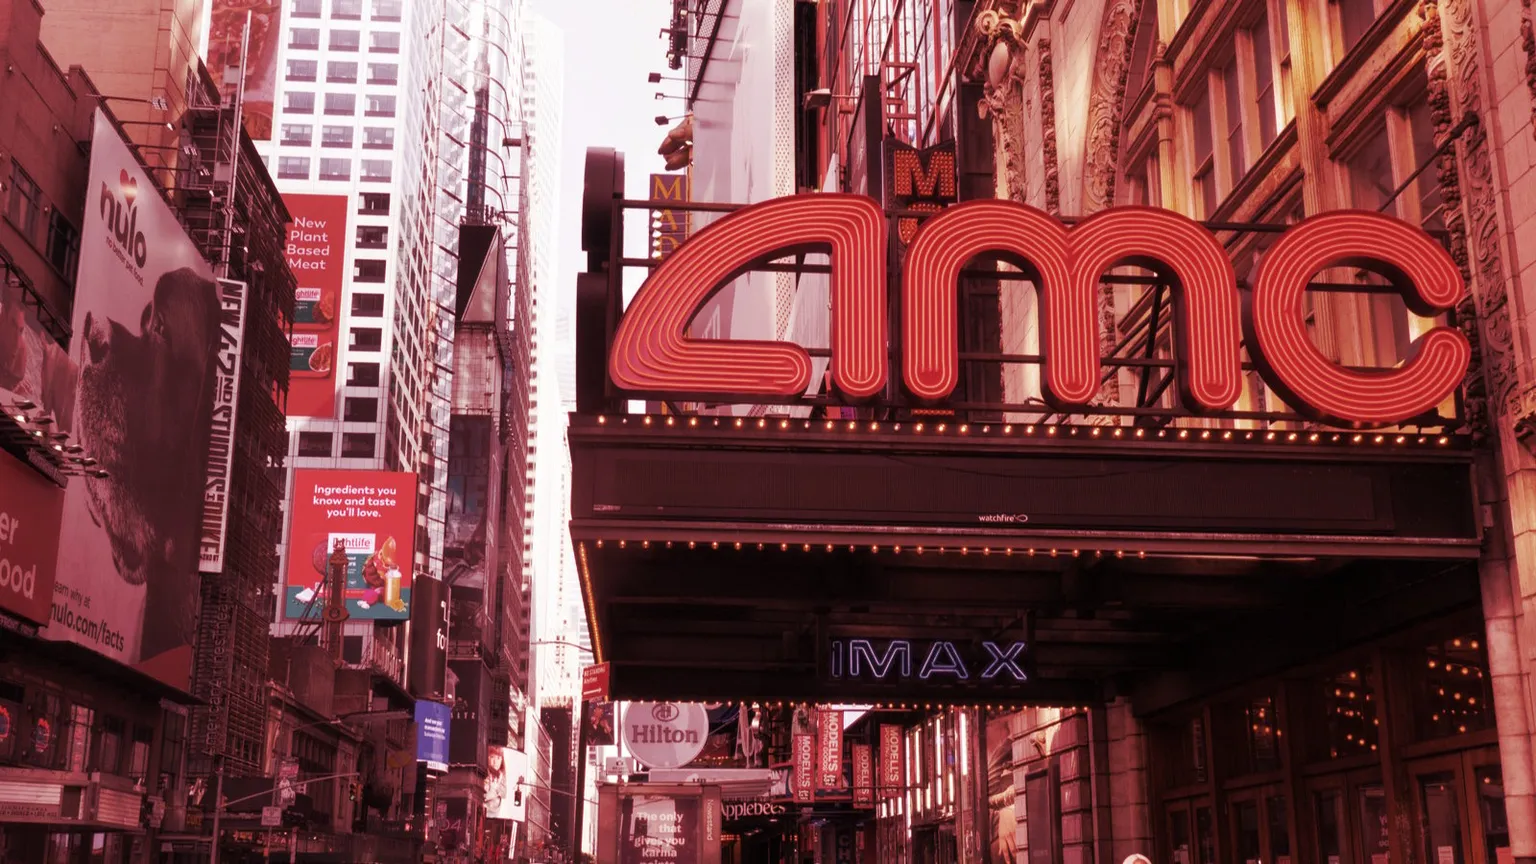 Cines AMC. Imagen: Shutterstock